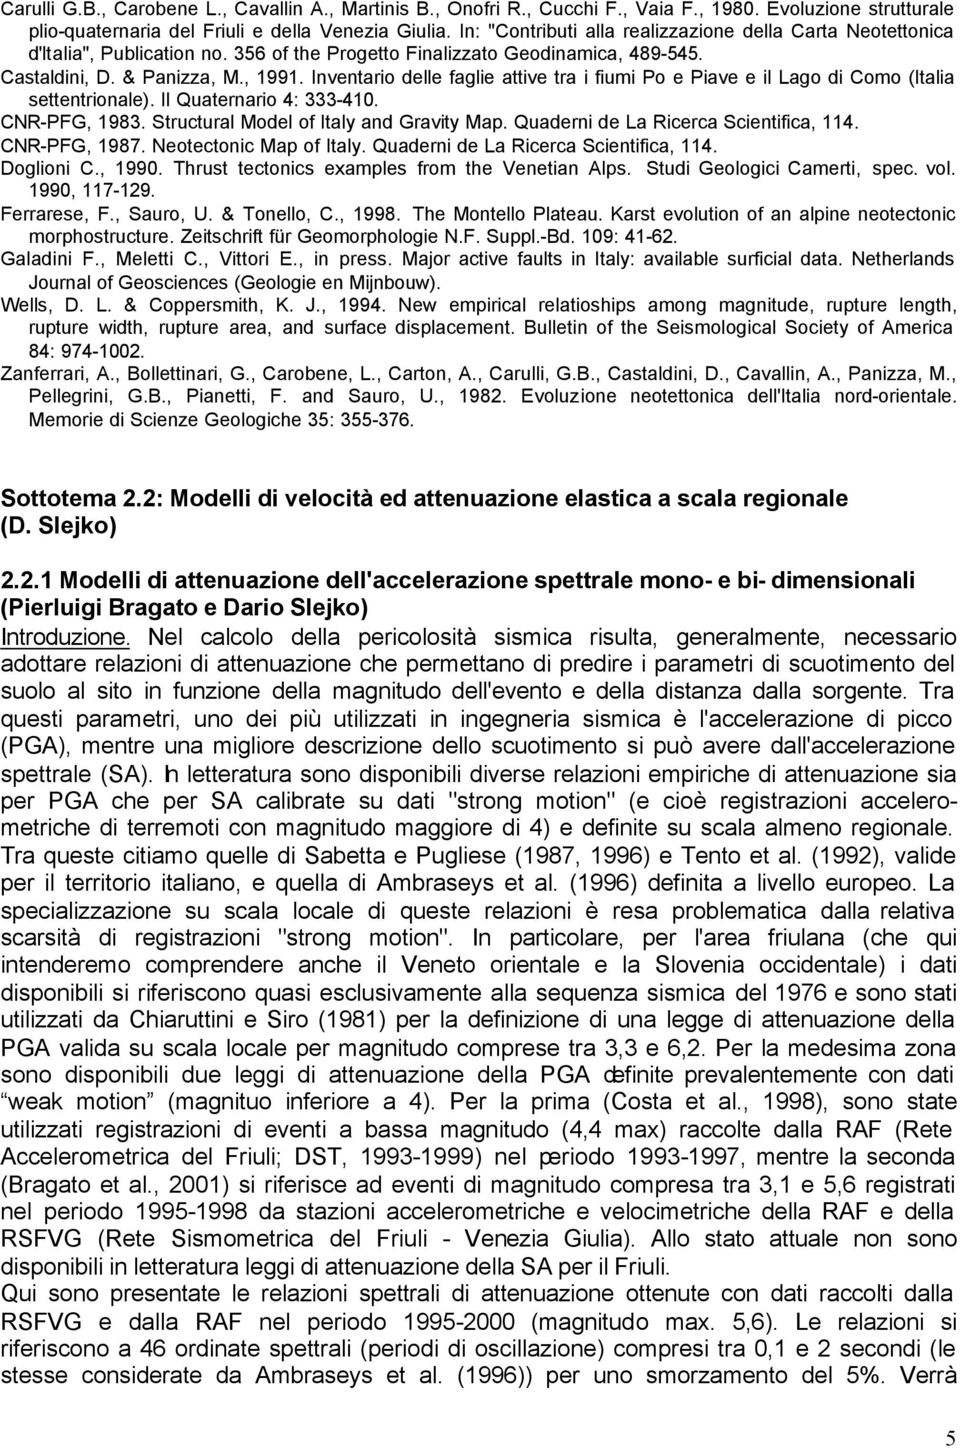 Inventario delle faglie attive tra i fiumi Po e Piave e il Lago di Como (Italia settentrionale). Il Quaternario 4: 333-410. CNR-PFG, 1983. Structural Model of Italy and Gravity Map.